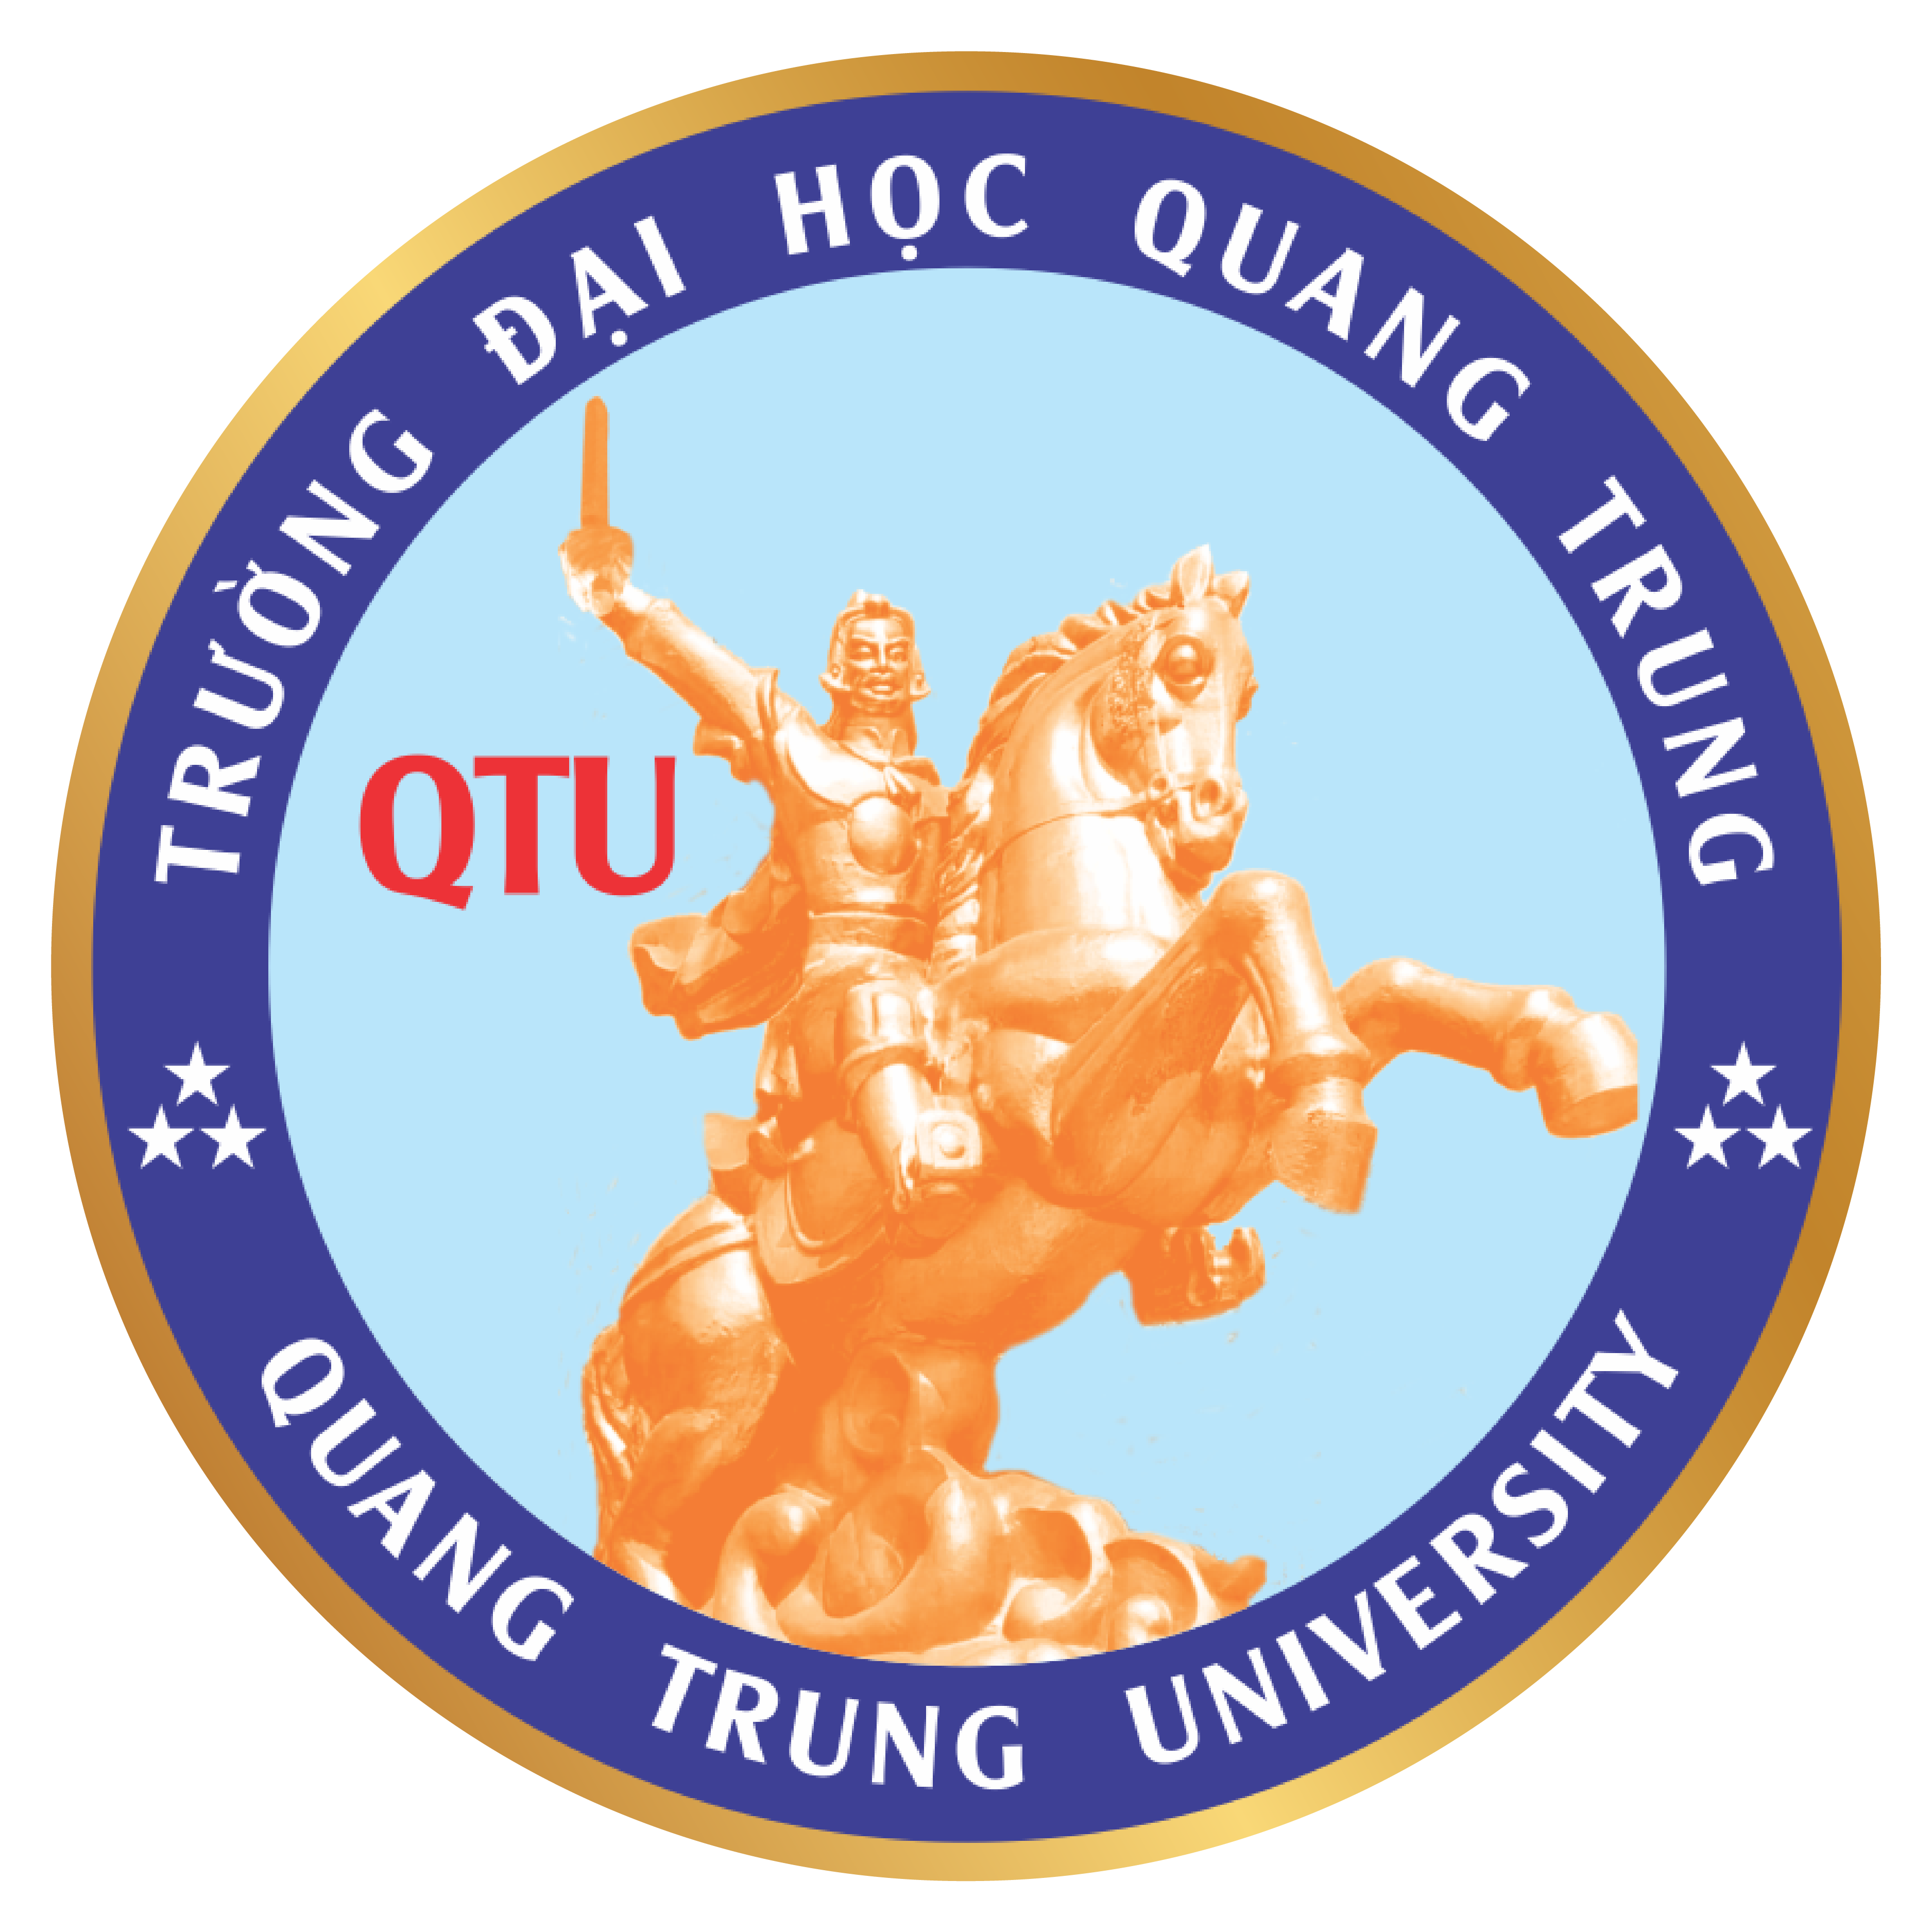 Trường Đại học Quang Trung